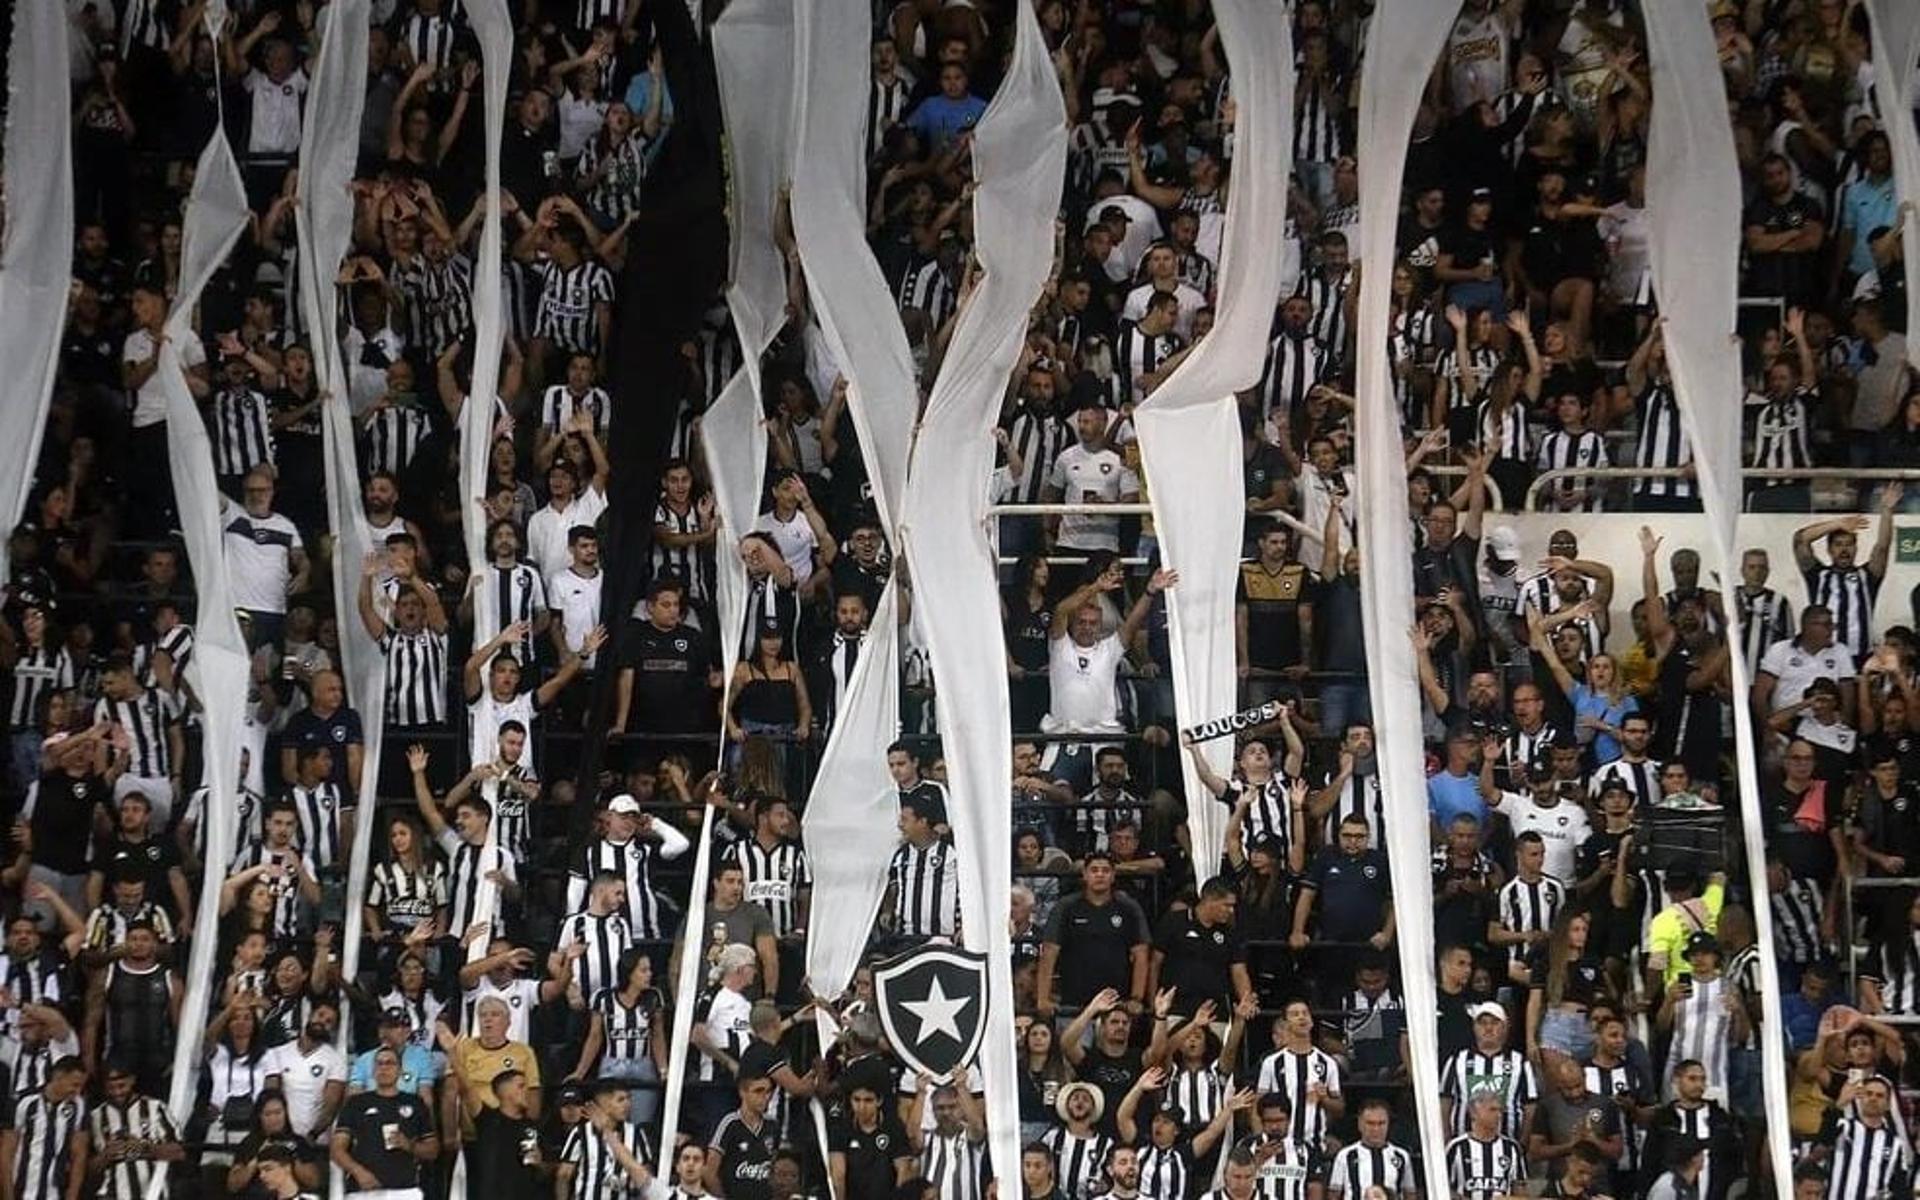 Torcida-do-Botafogo-no-Nilton-Santos-aspect-ratio-512-320